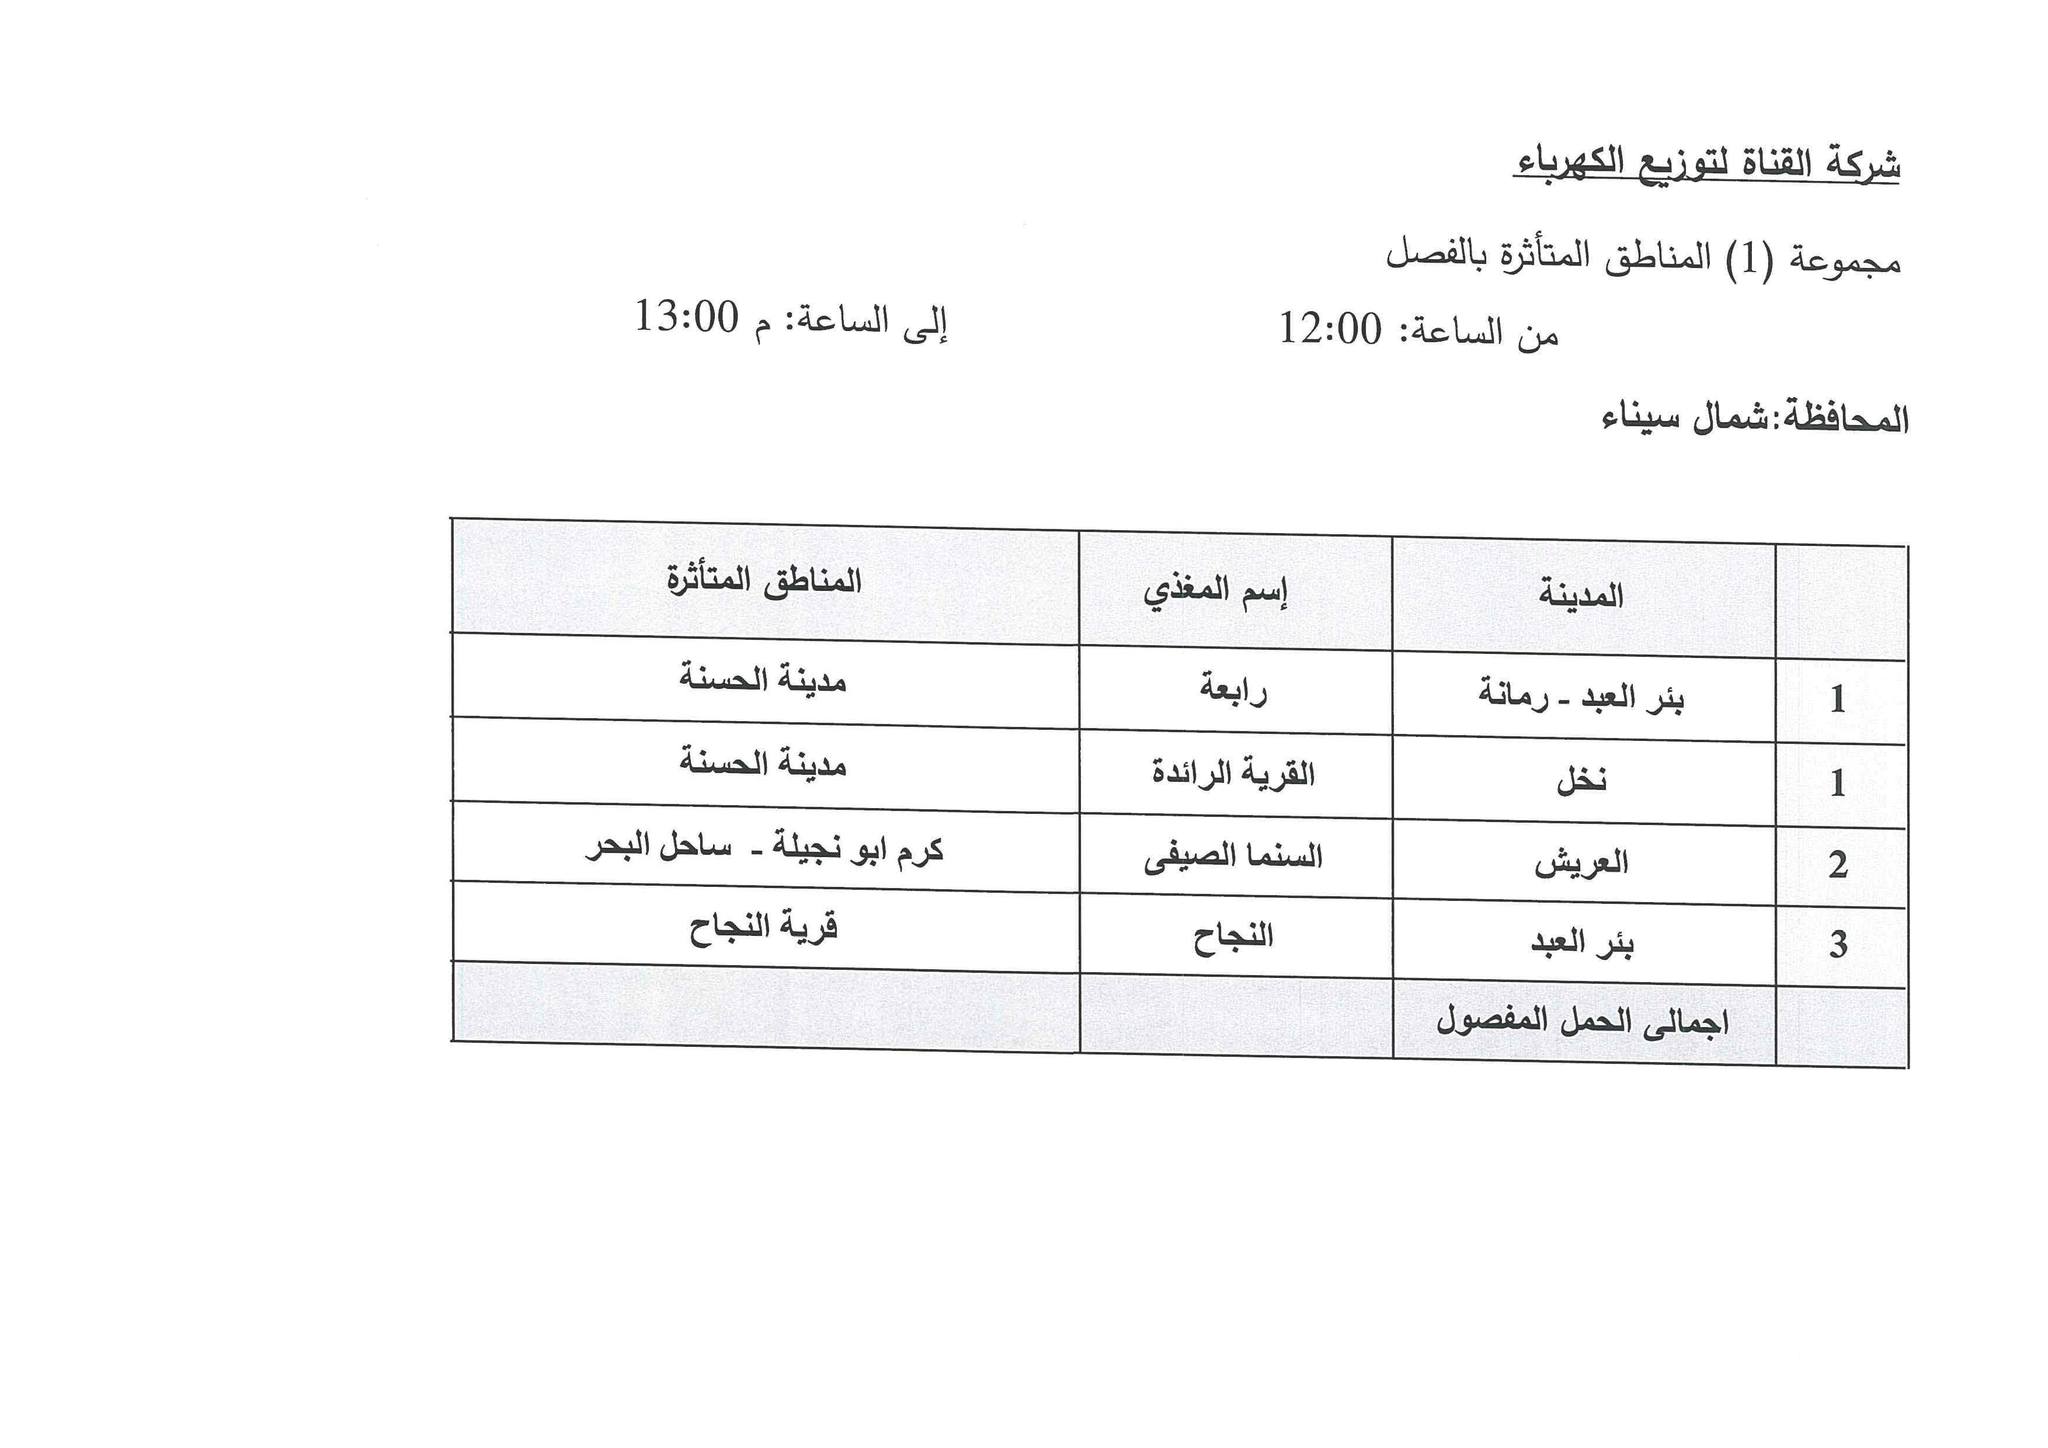 جدول مواعيد تخفيف الأحمال الكهربائية فى محافظة شمال سيناء (6)